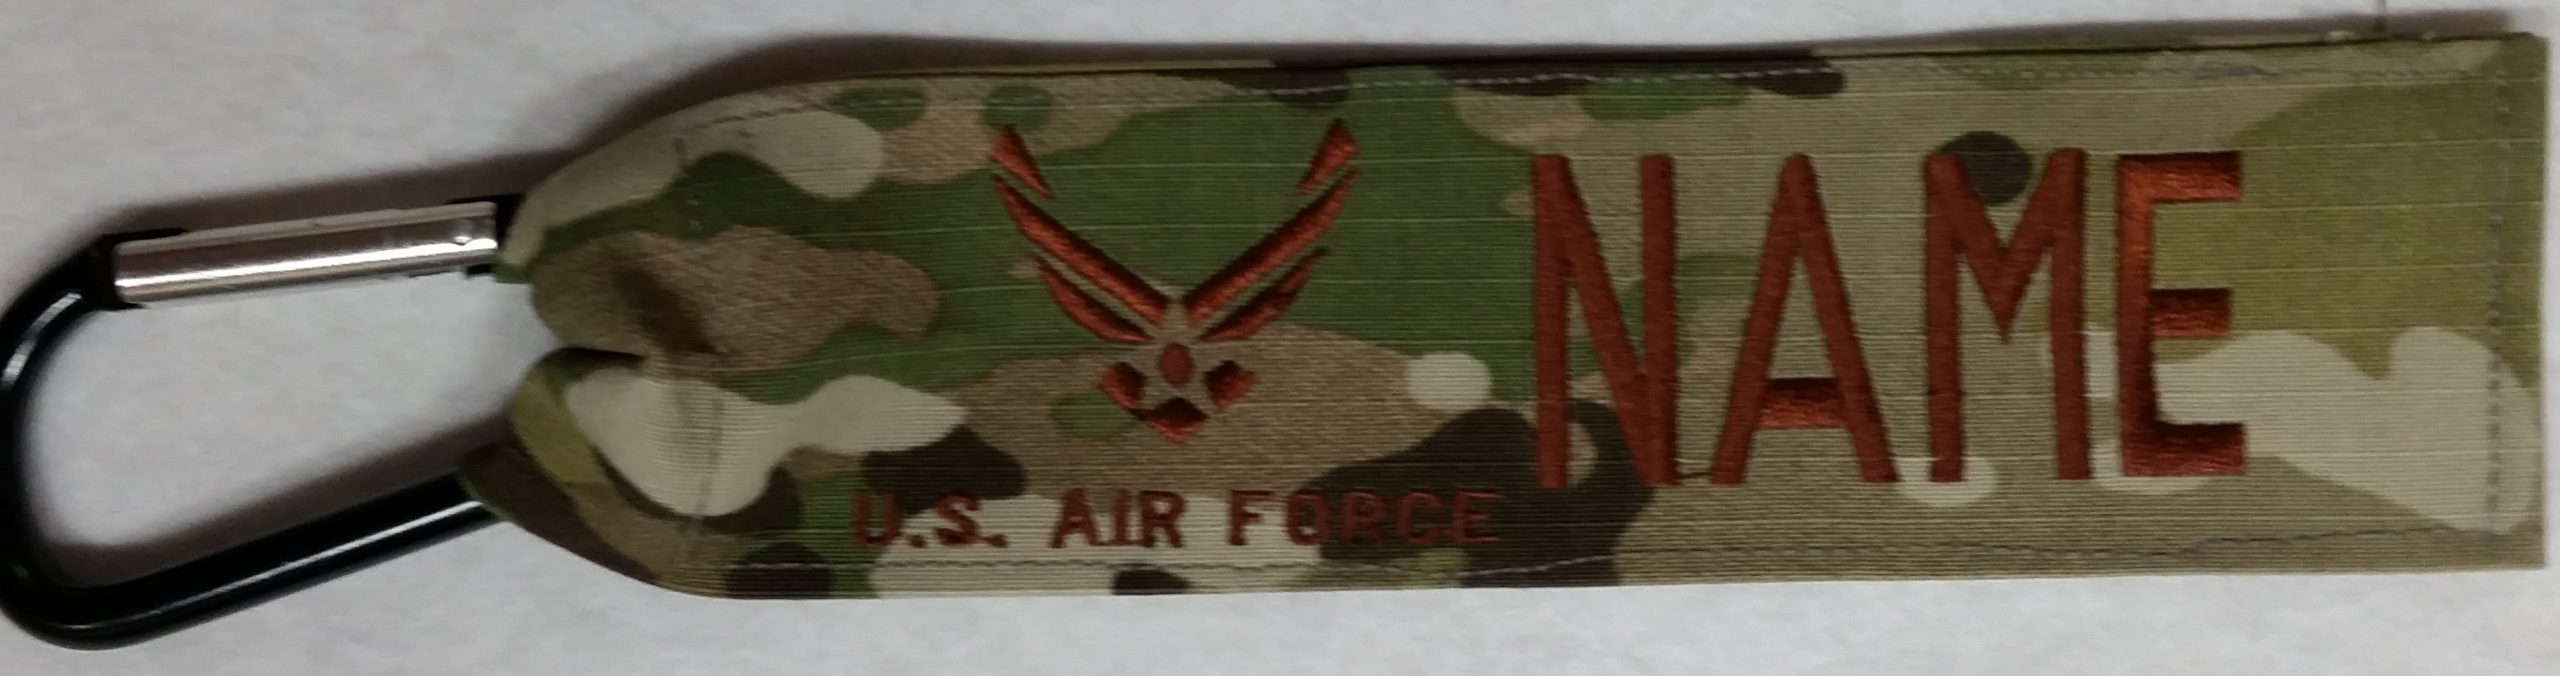 U.S. Army OD Green Name Tape 3 Pack